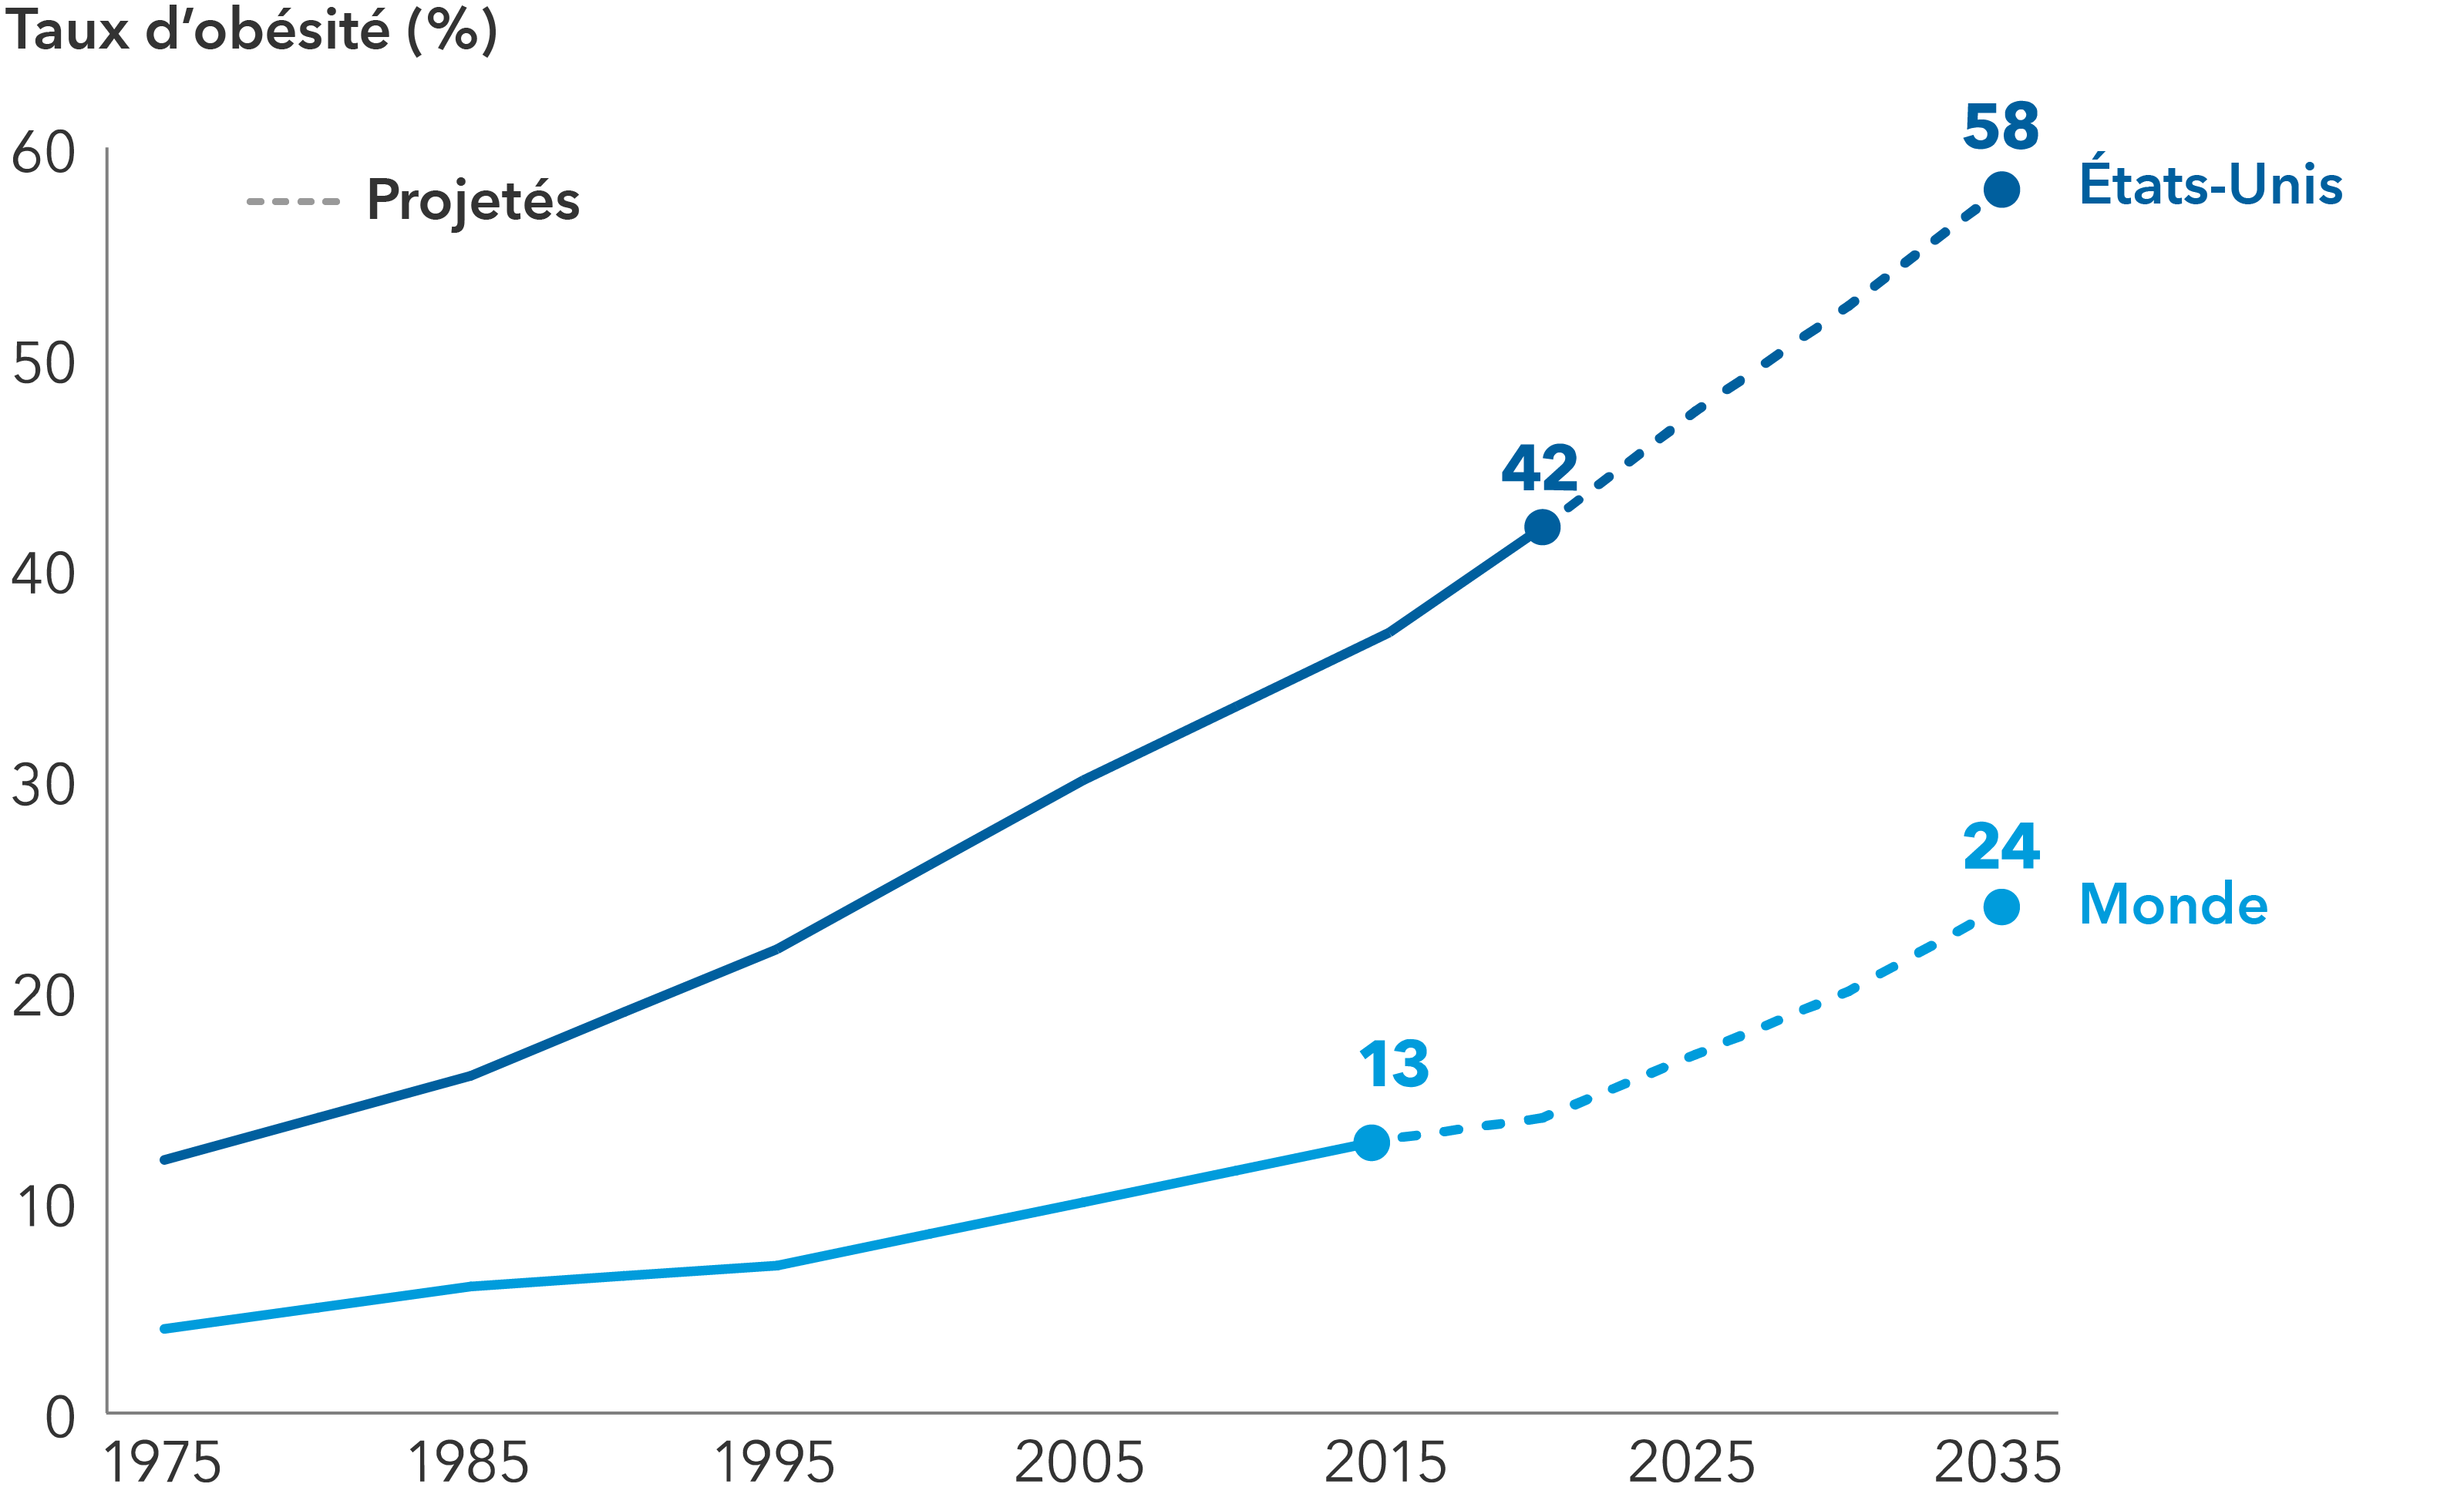 Le graphique illustre l’augmentation des taux d’obésité et les projections pour les États-Unis (en bleu foncé) et le monde entier (en bleu clair). Aux États-Unis, les taux étaient de 12 % en 1975, 16 % en 1985, 22 % en 1995, 30 % en 2005 et 37 % en 2015. Le taux d’obésité aux États-Unis devrait atteindre 58 % d’ici 2035. Les taux mondiaux étaient de 4 % en 1975, 6 % en 1985, 7 % en 1995, 10 % en 2005 et 13 % en 2015. Le taux d’obésité mondial devrait atteindre 24 % d’ici 3035.